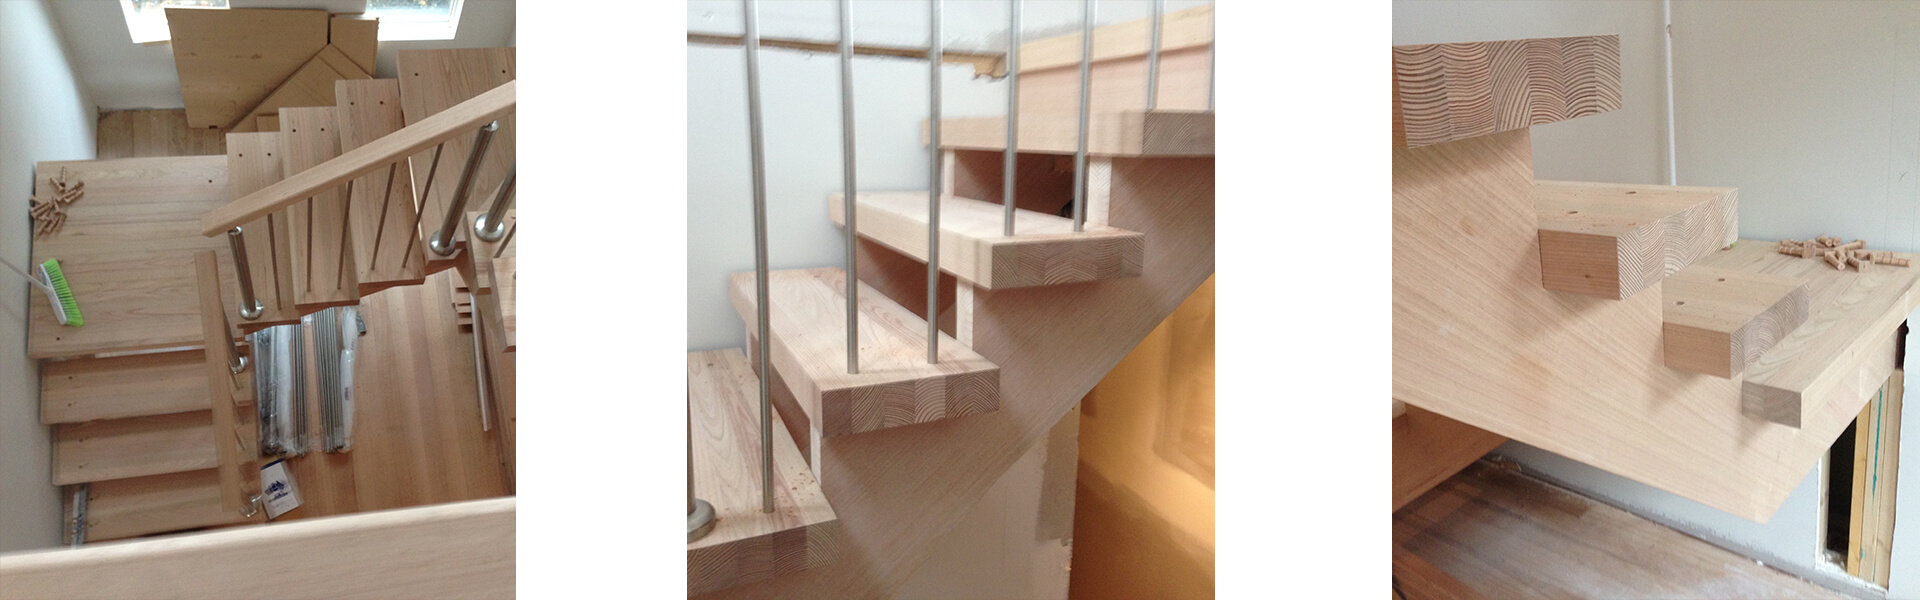 schody drewniane zabiegowe wewnętrzne bez podstopni, nakładane